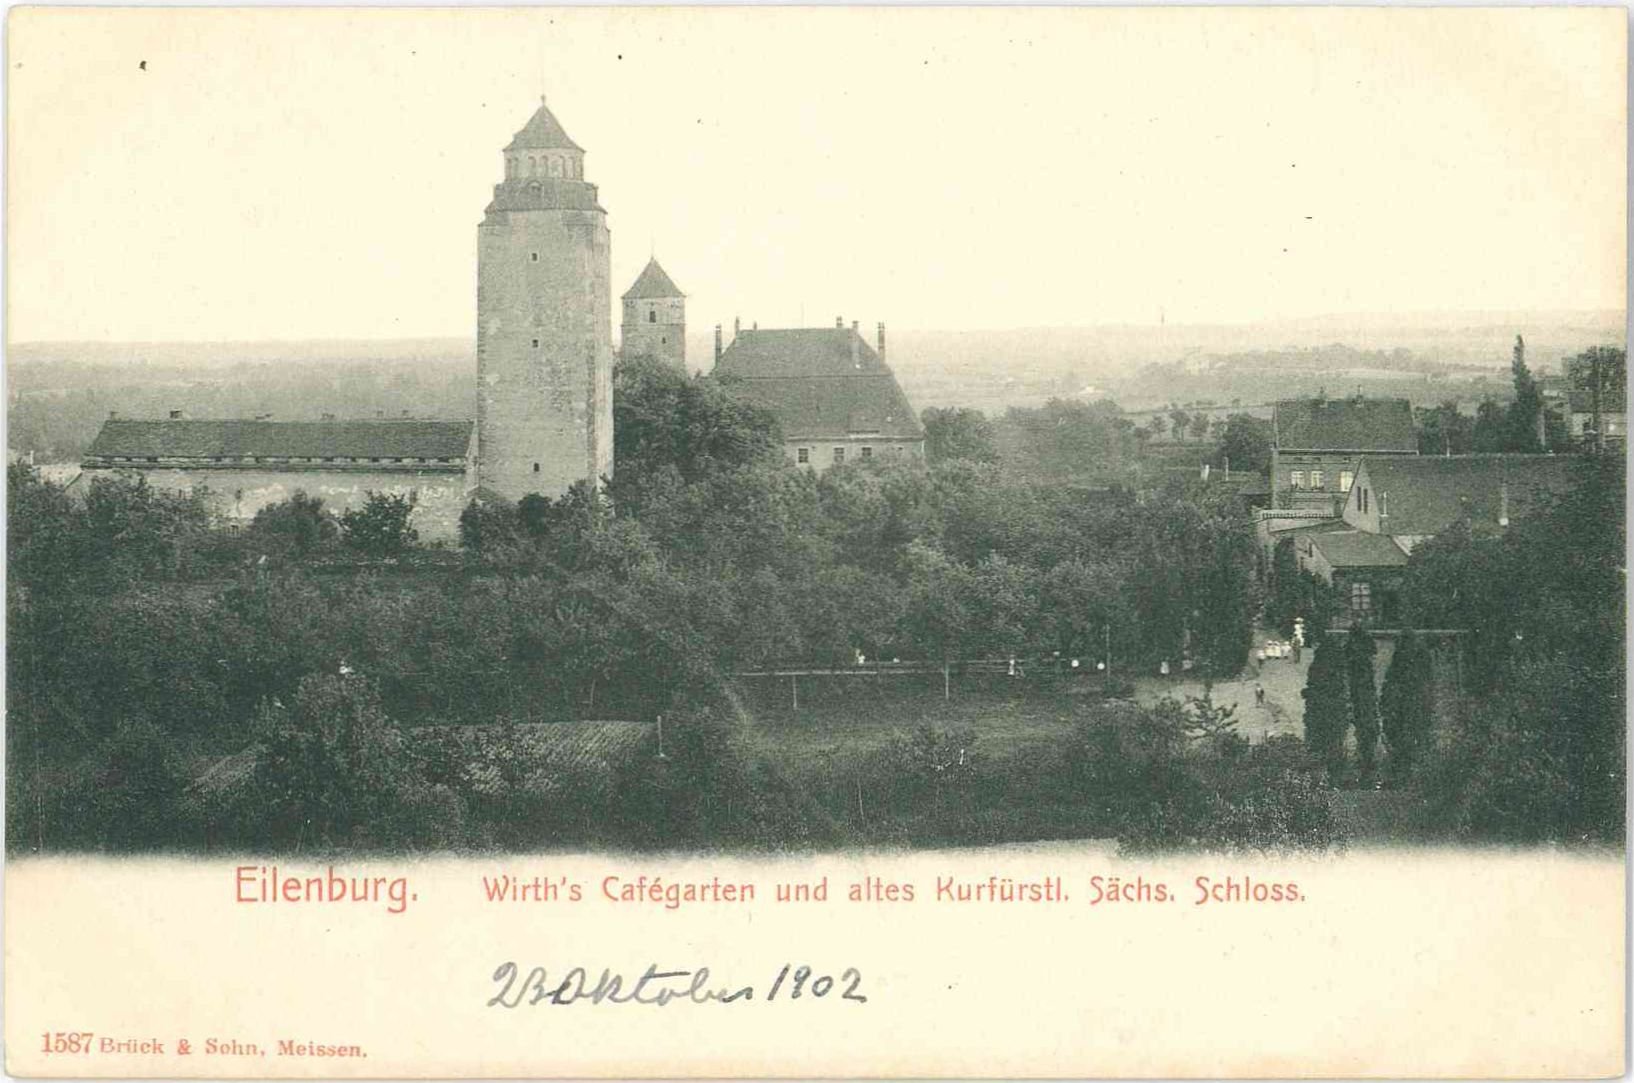 Eilenburg. Wirth's Cafégarten und altes Kurfürstl. Sächs. Schloss (Stadtmuseum Eilenburg RR-P)